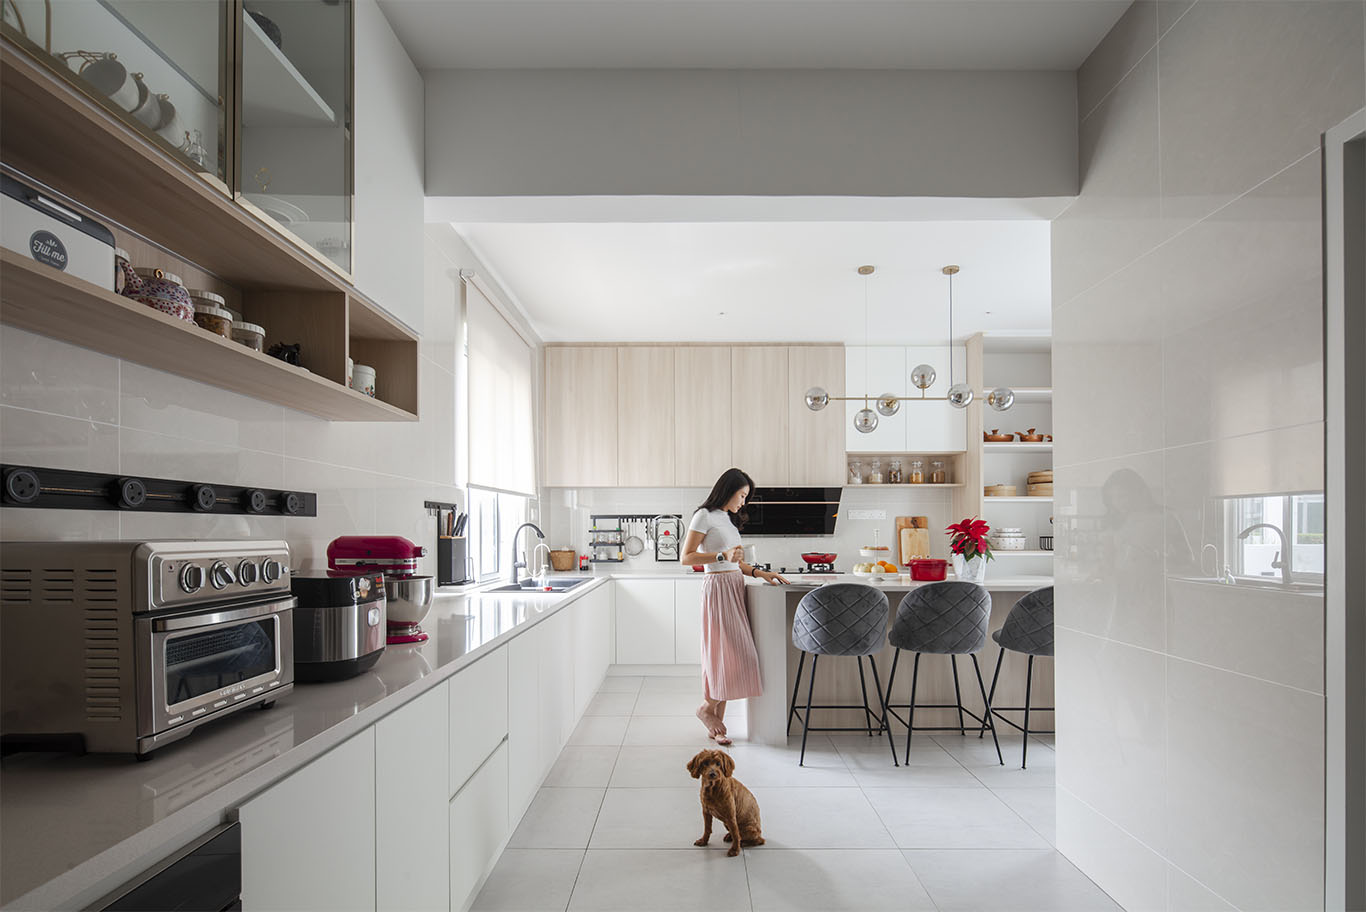 Grande Rhapsody soft beige theme kitchen Mieux interior design